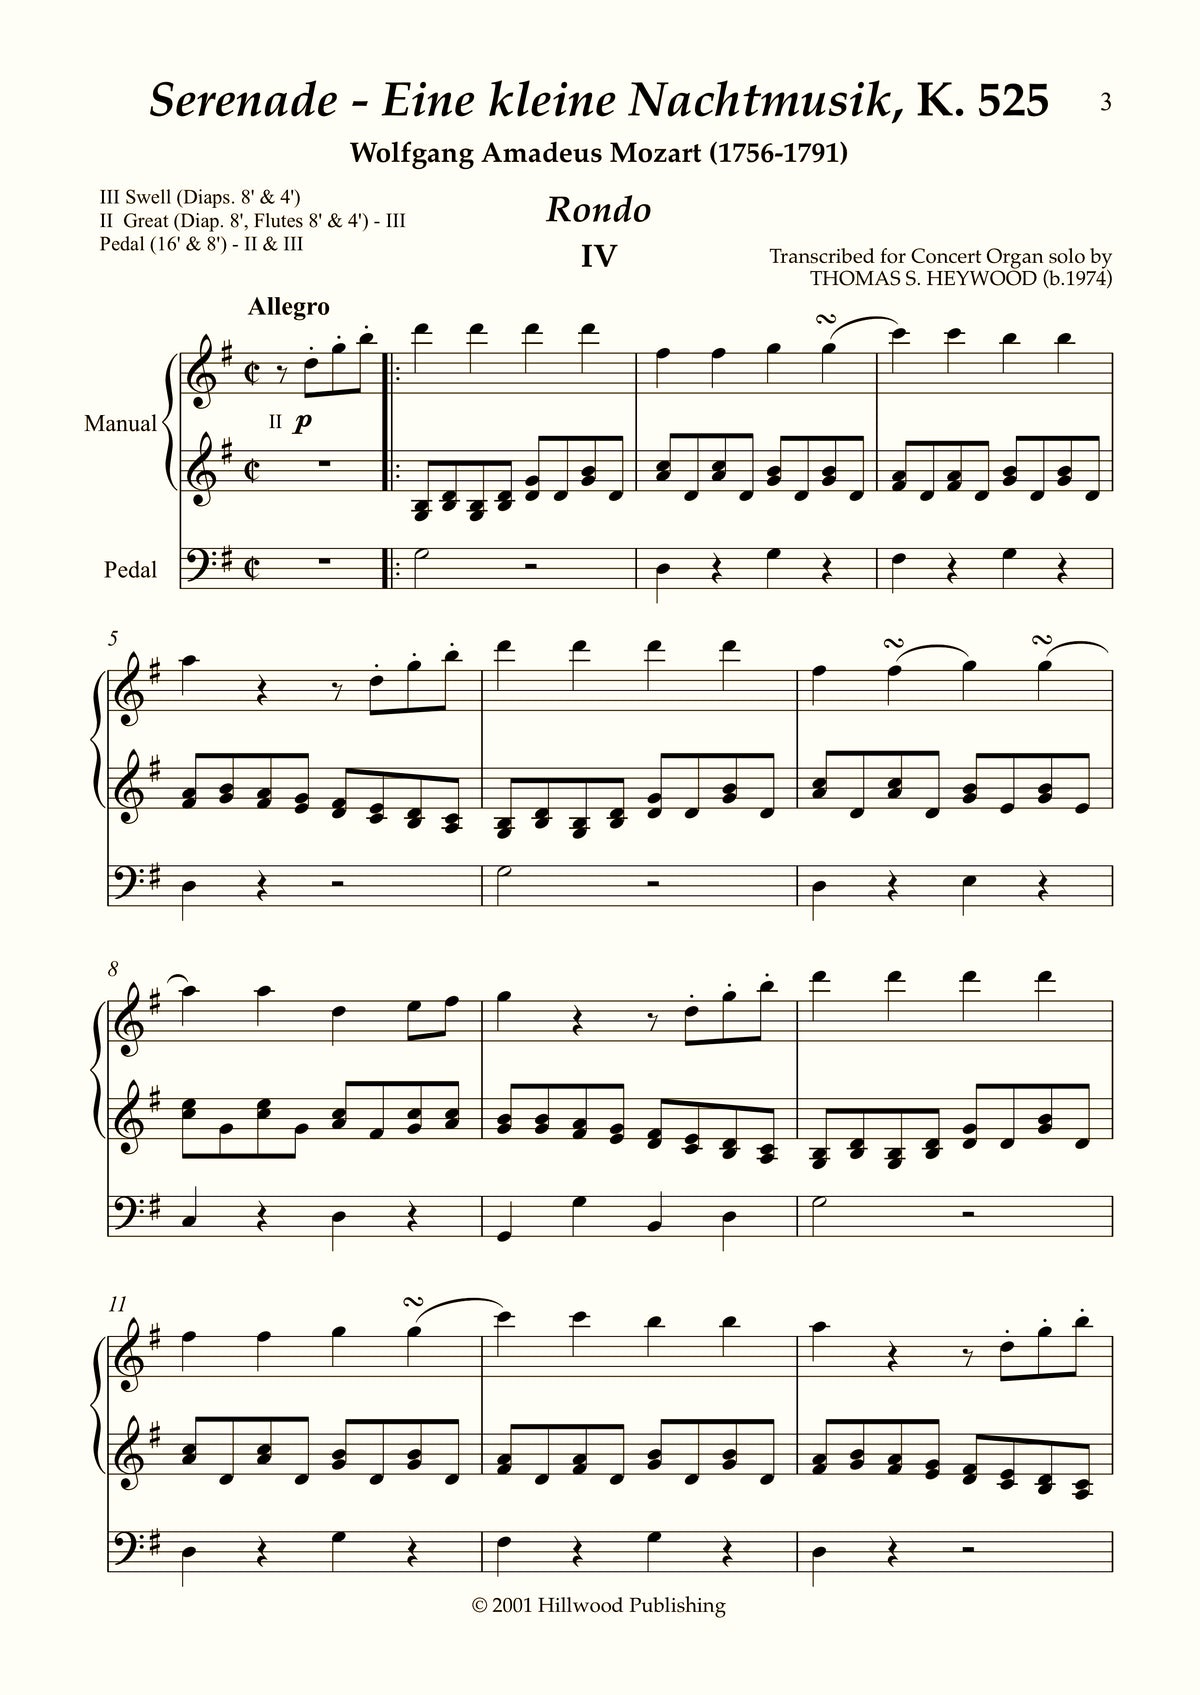 Mozart/Heywood - Rondo from Eine kleine Nachtmusik, K. 525 (Score) | Thomas Heywood | Concert Organ International